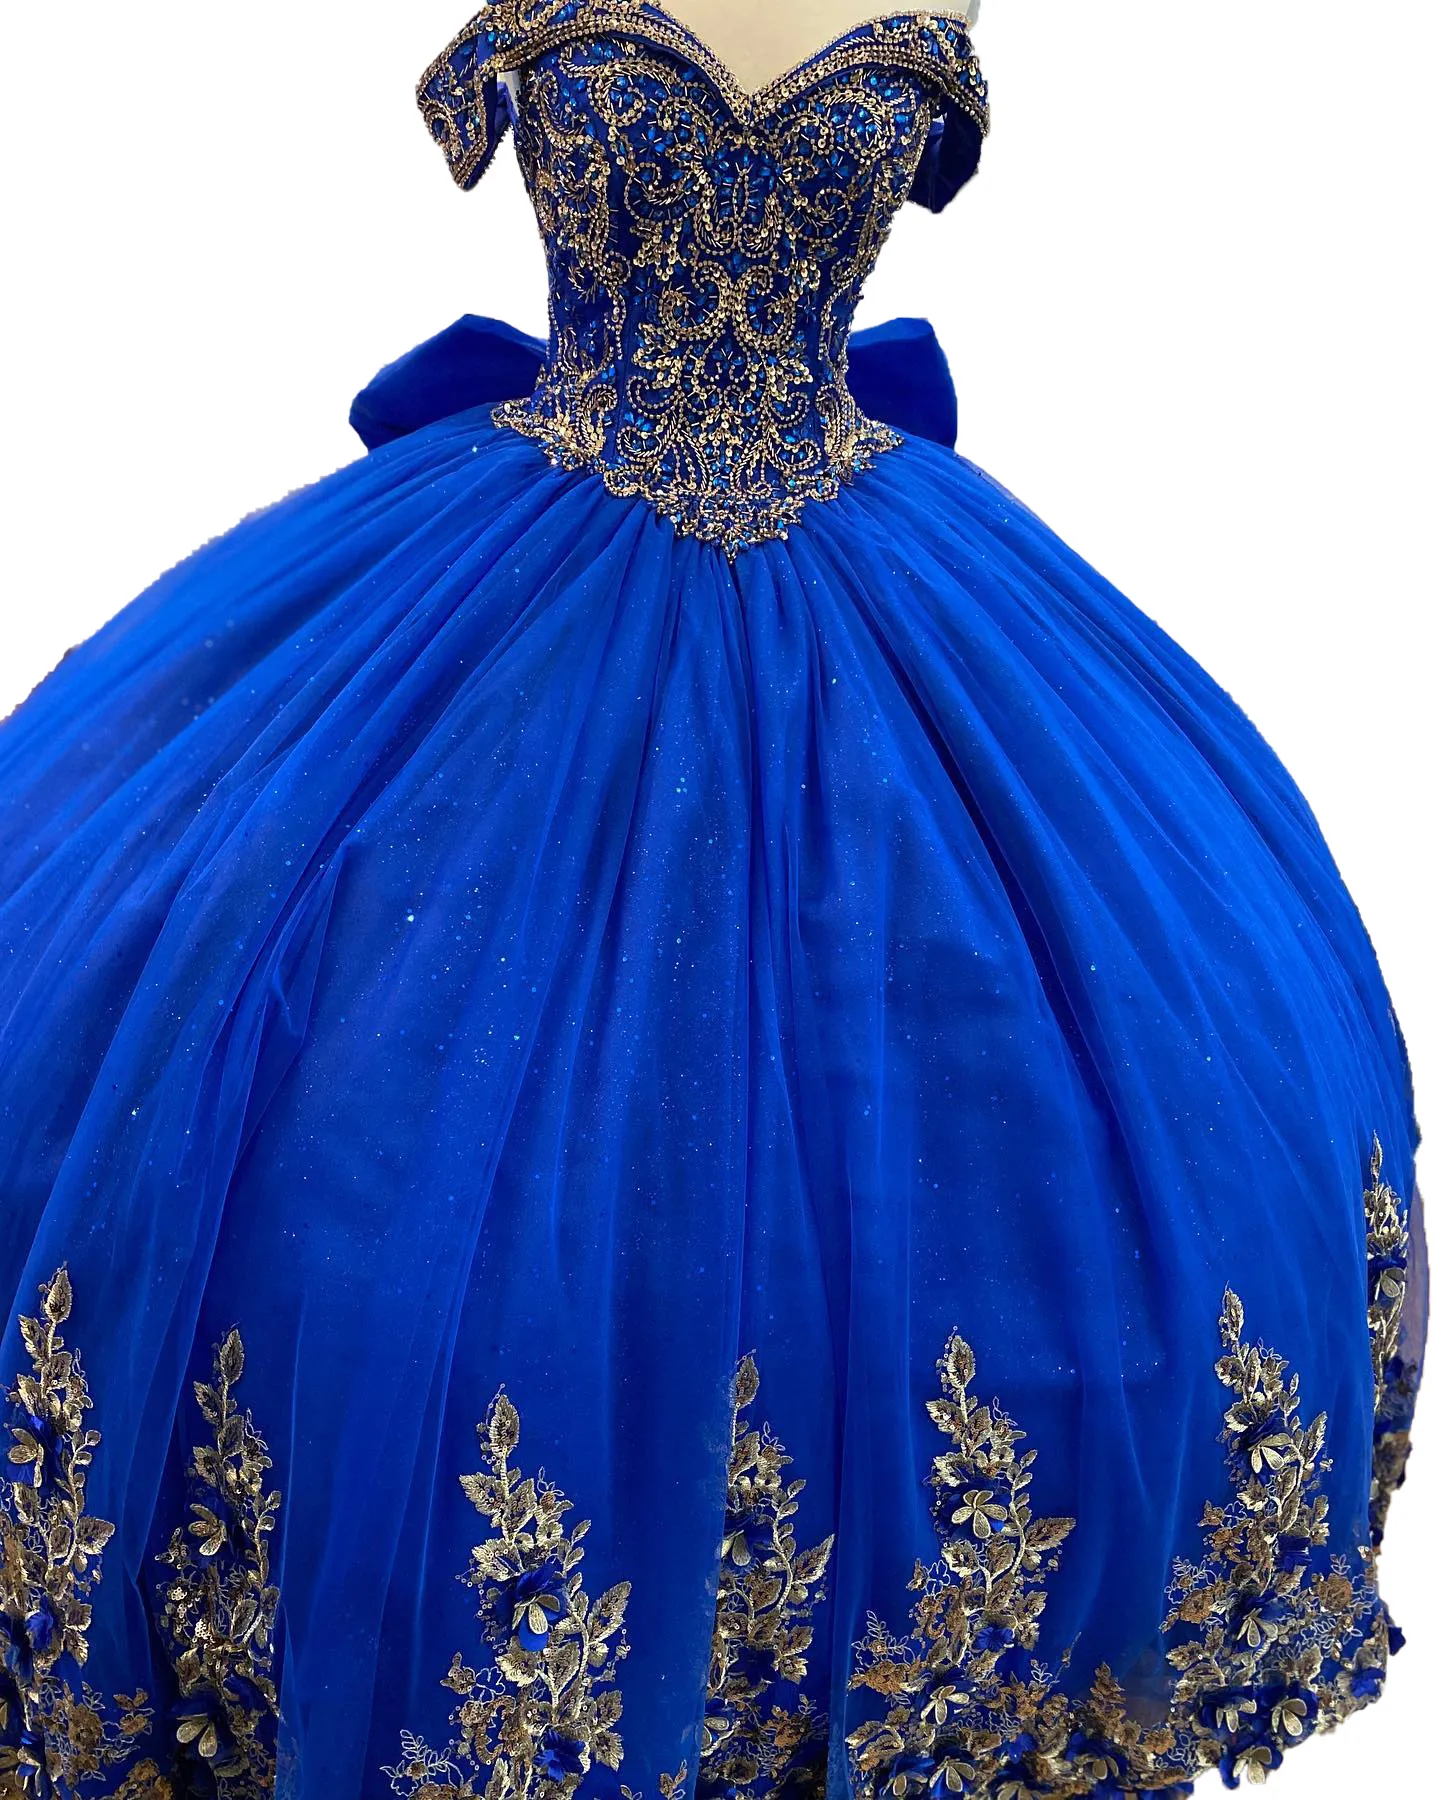 Vestido de bola floral azul royal vestido de bola de bola de bola de tamanho mais arco.